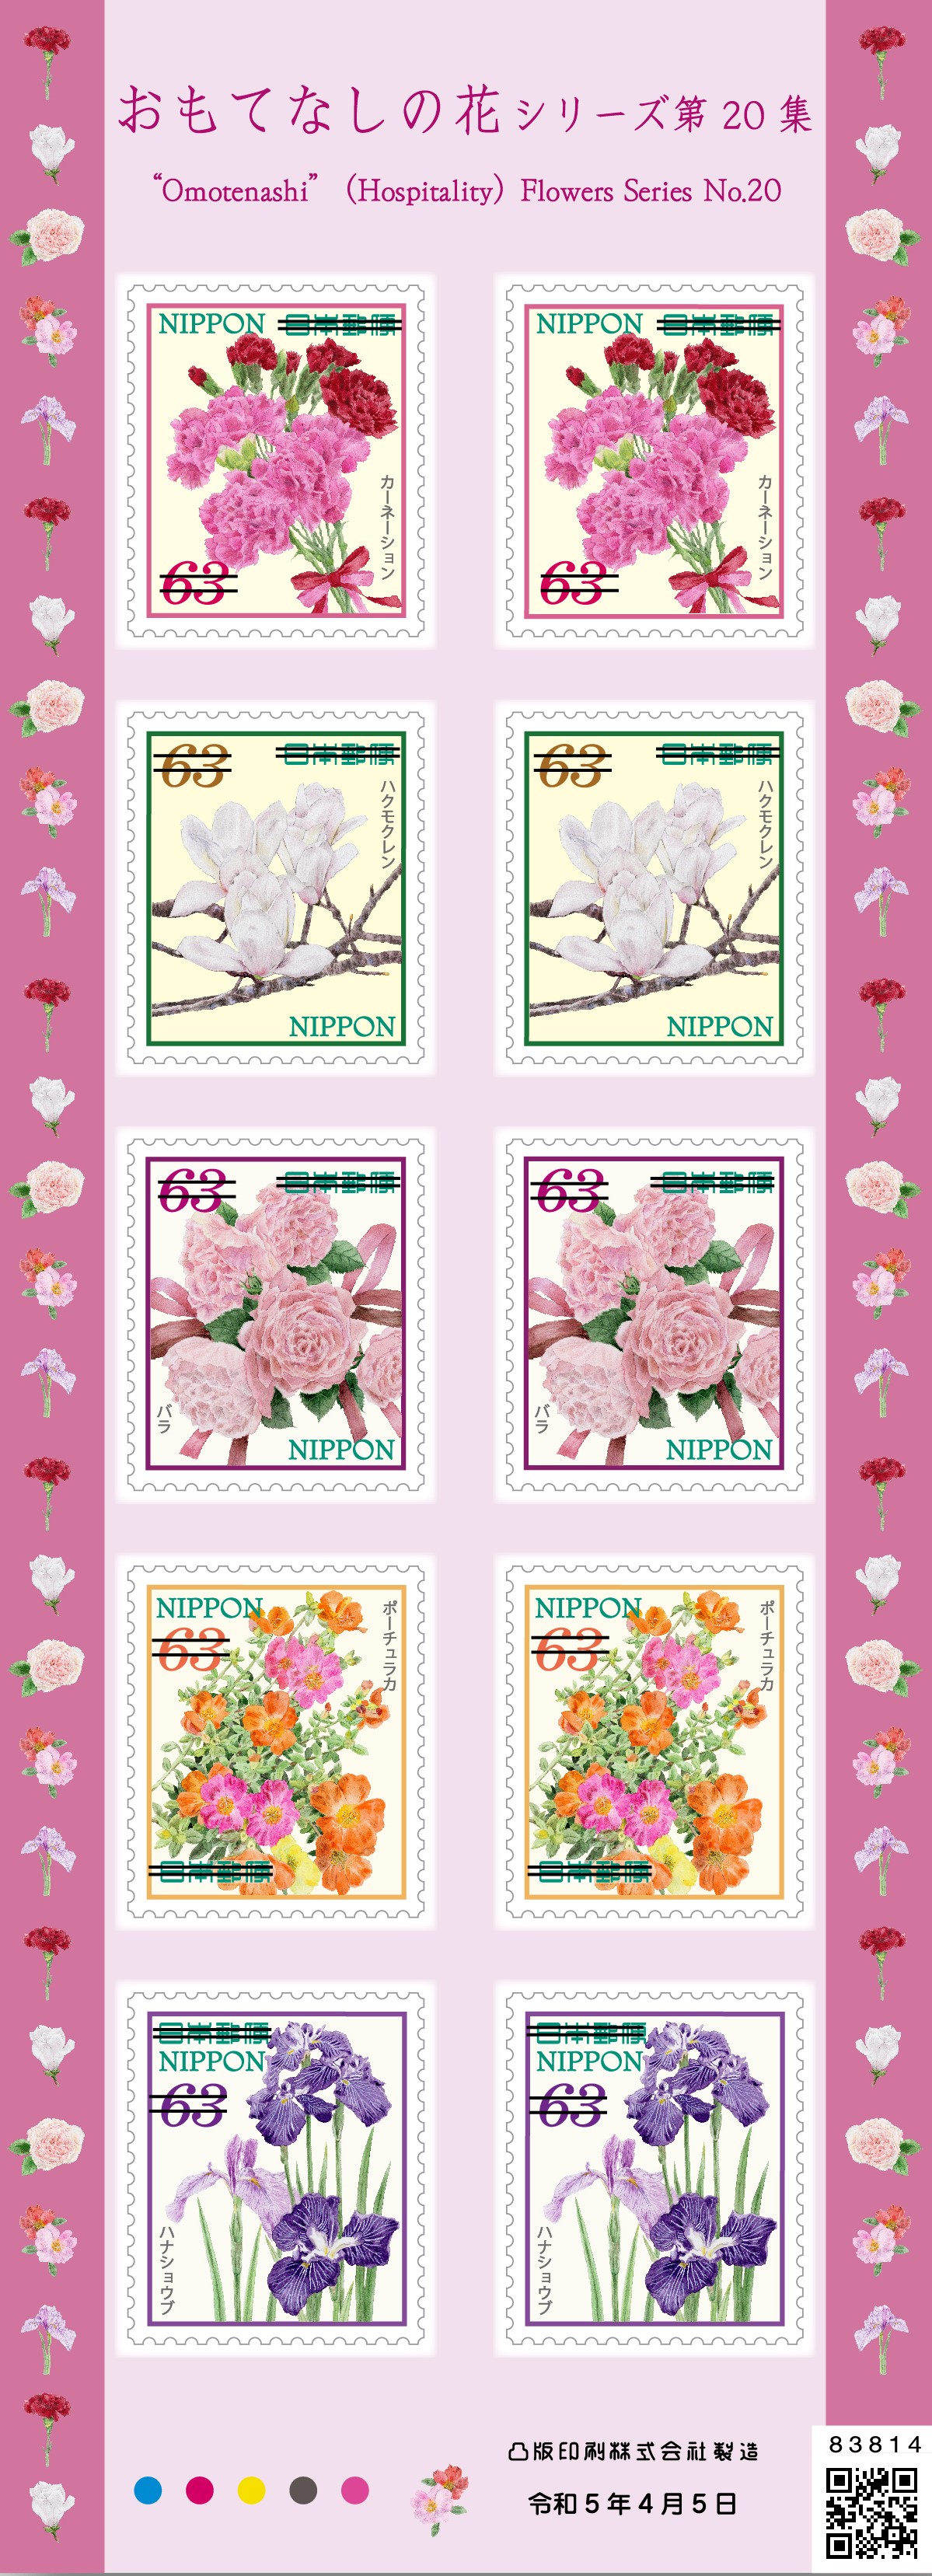 使用済み切手 おもてなしの花シリーズ40枚